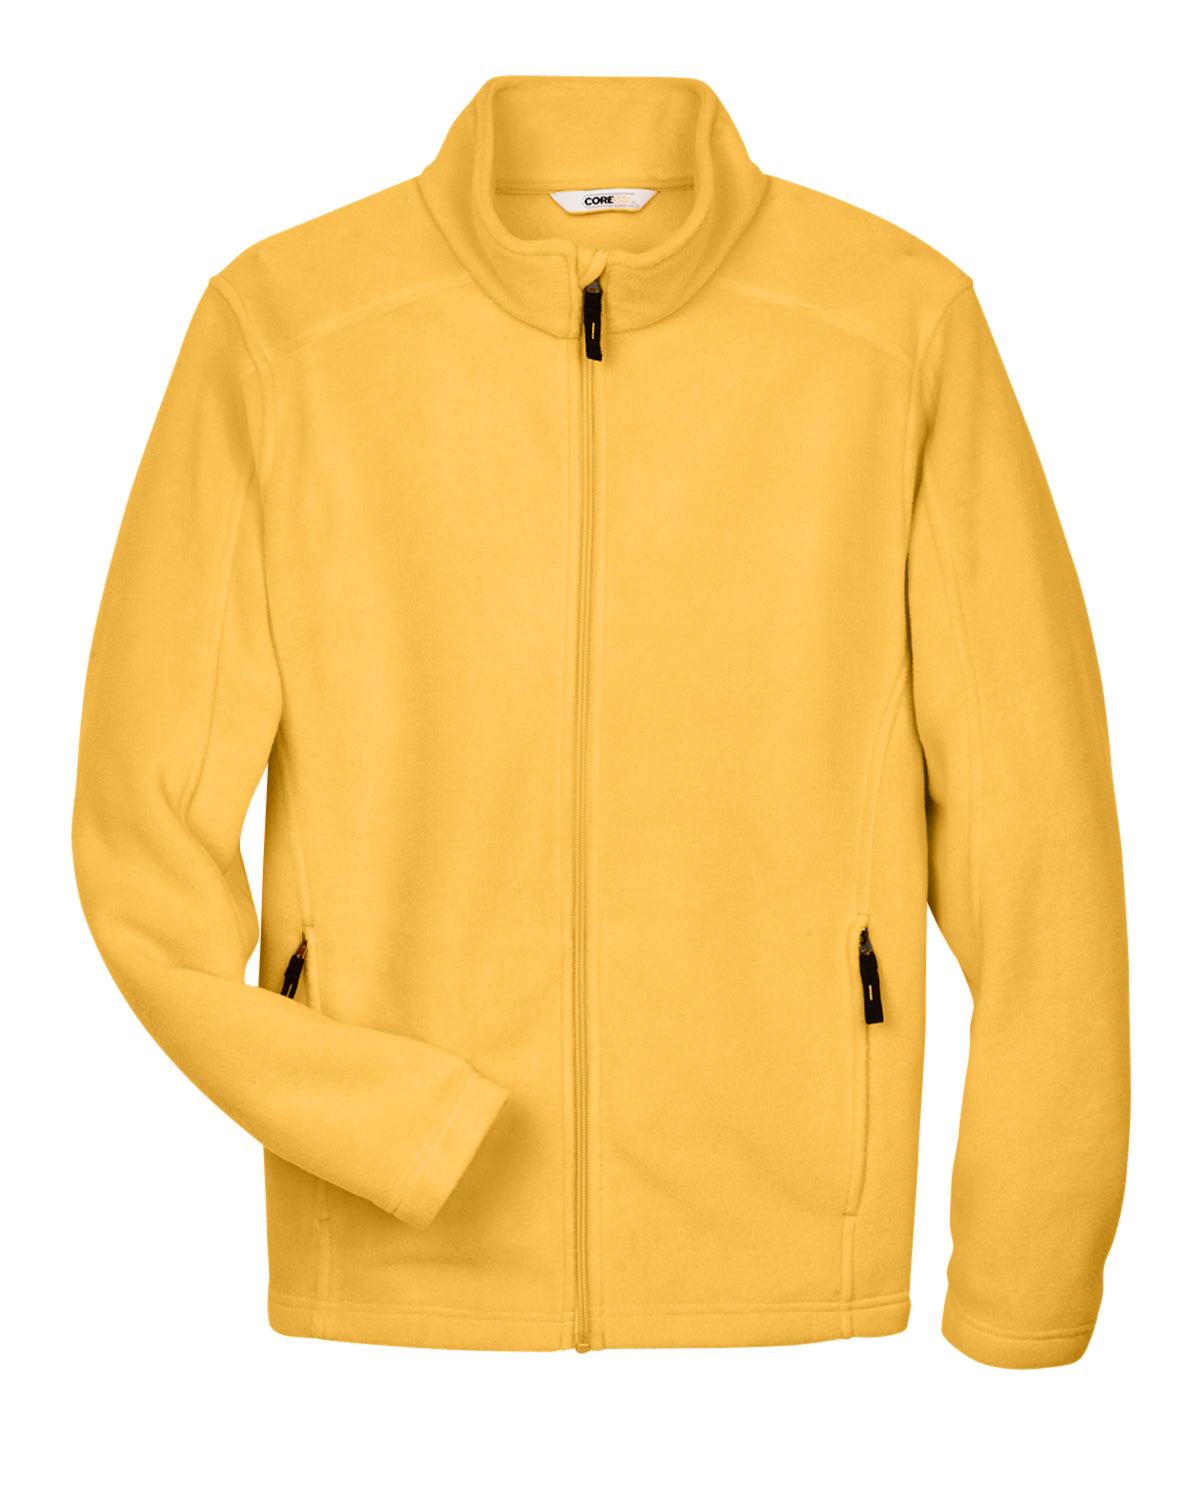 Men's Fleece Jacket - shoppe list